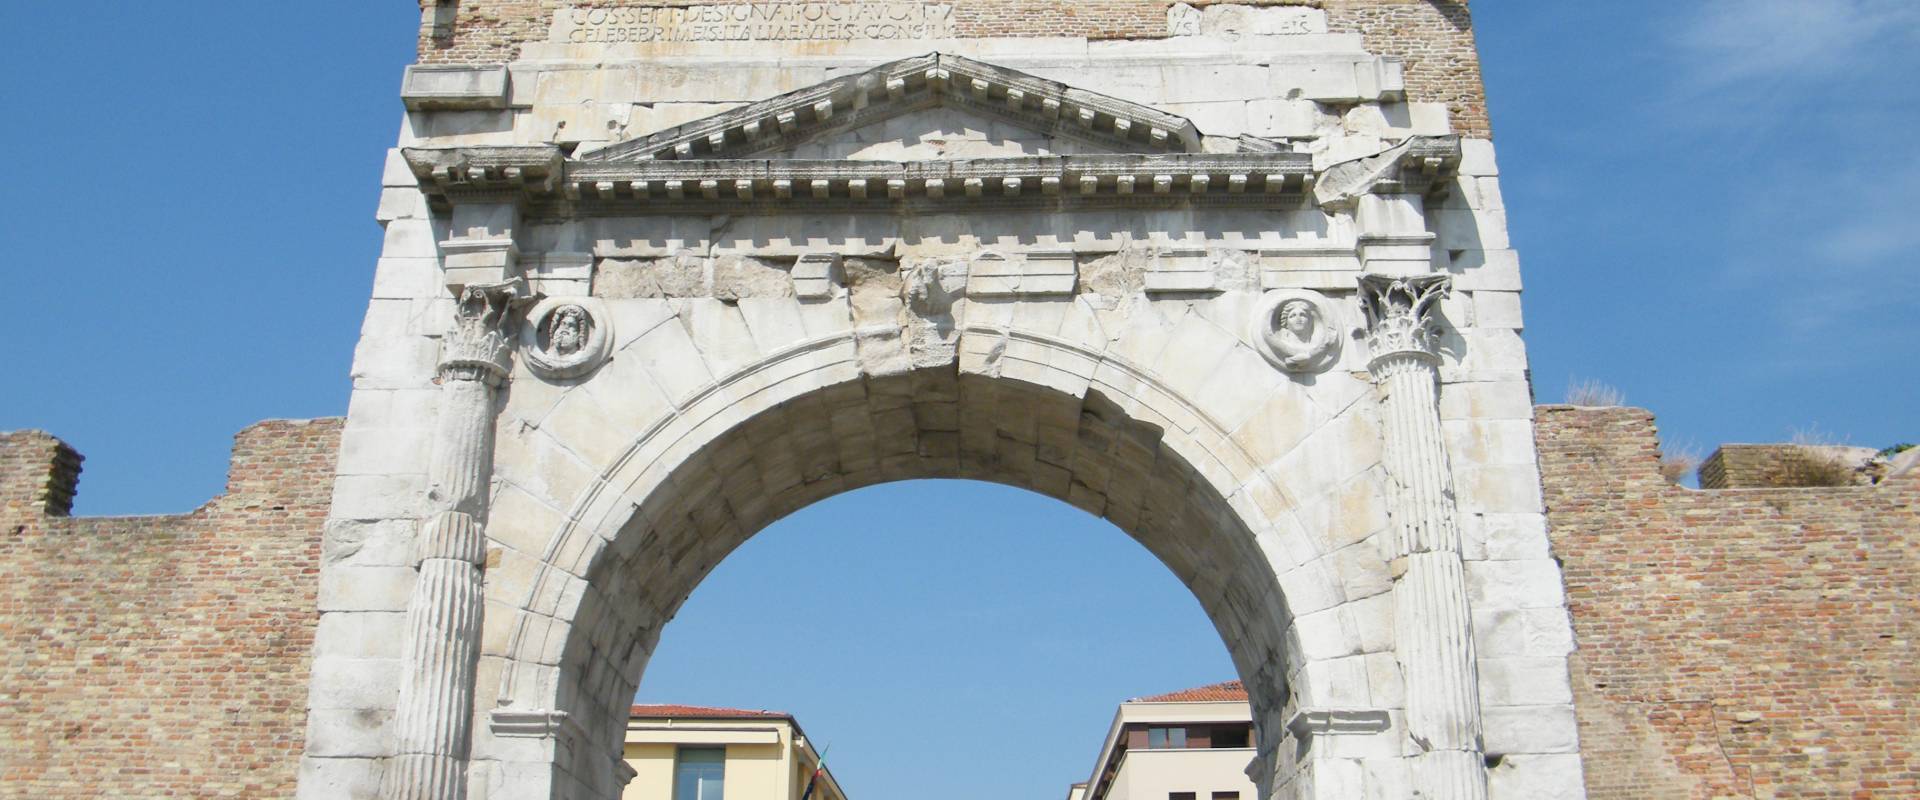 Arco di Augusto foto di Lukasz pob